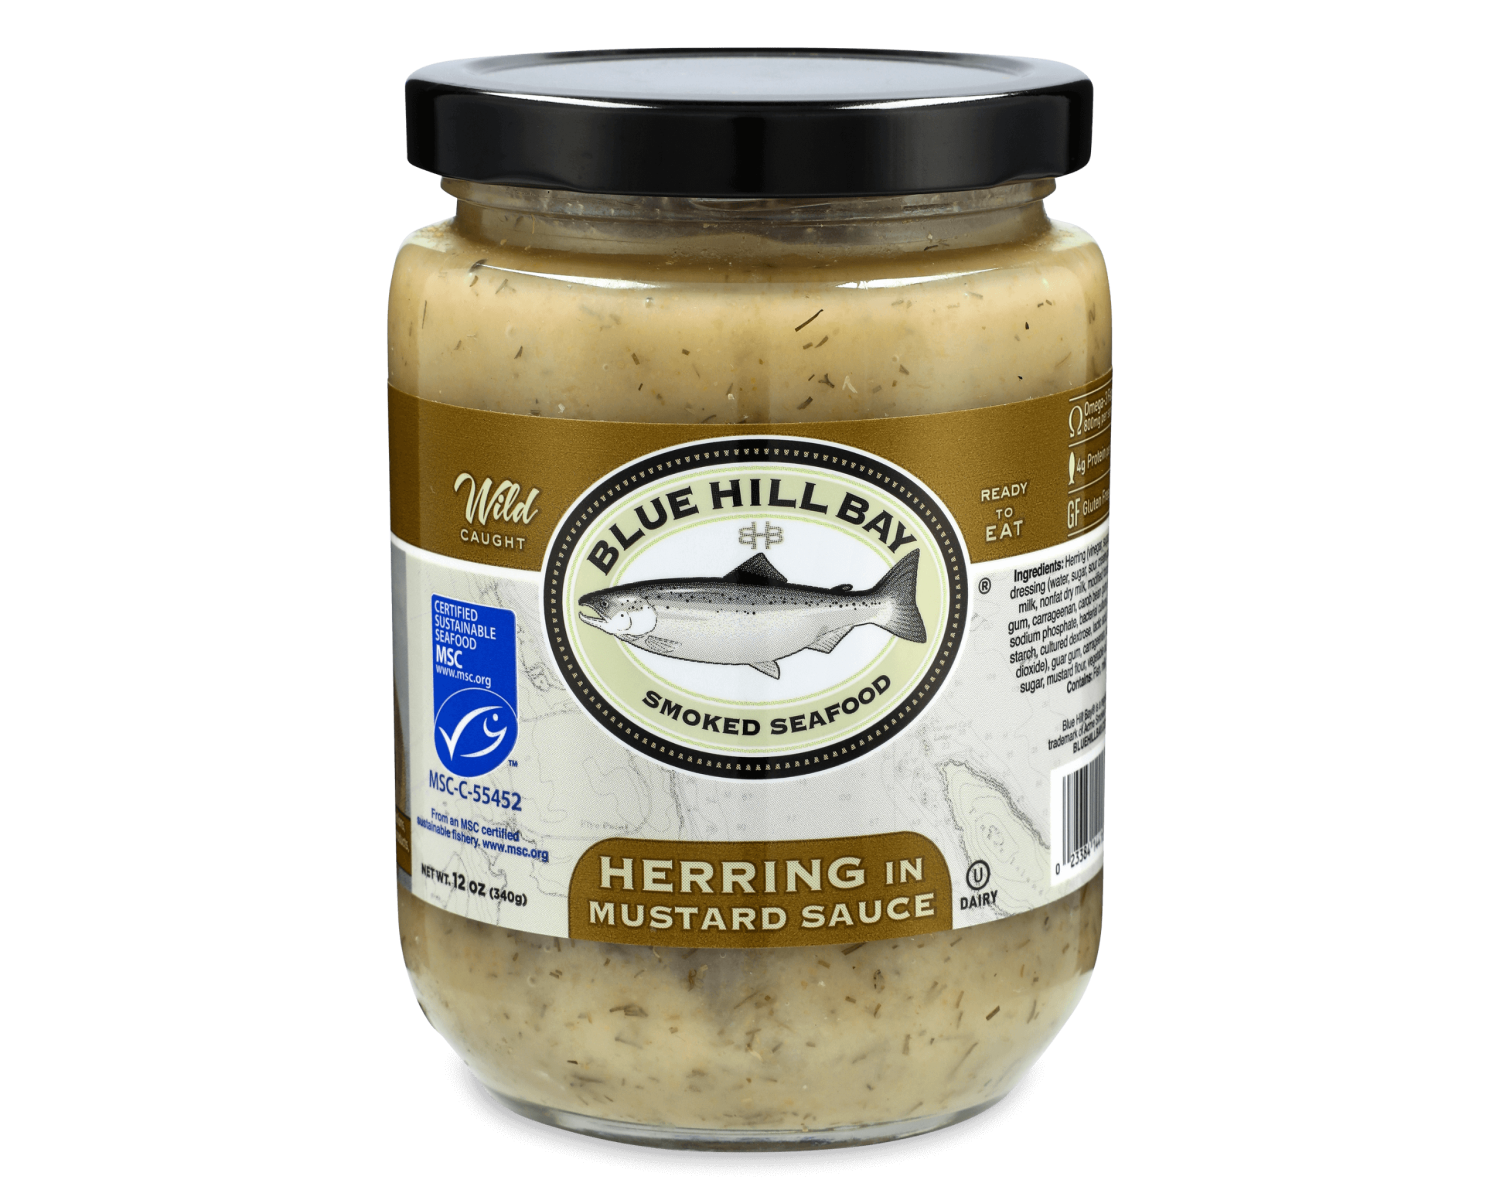 12 oz. pickled Herring in Mustard